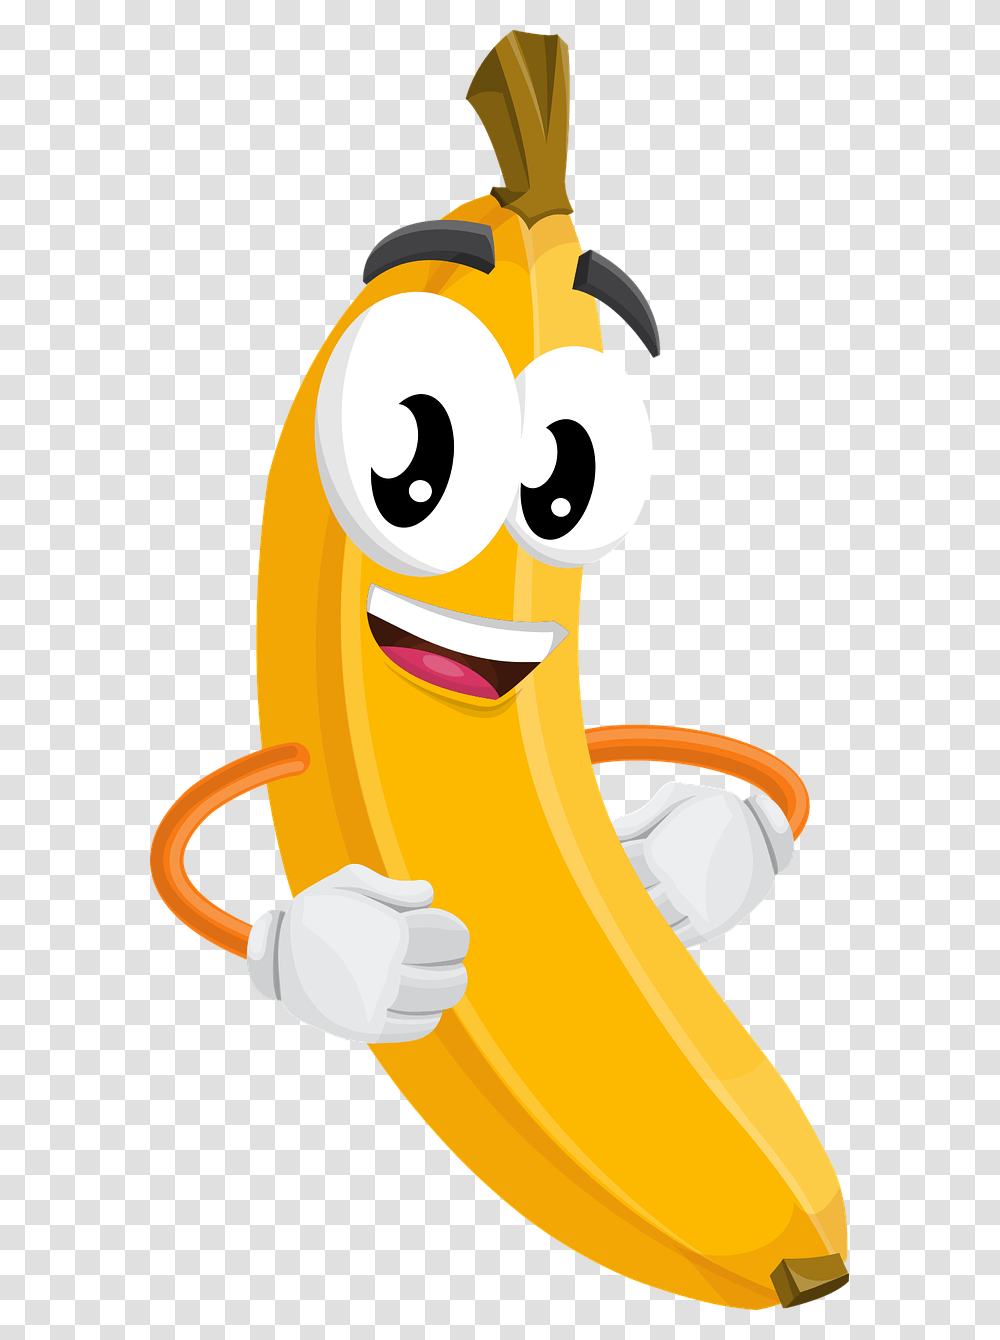 Banana Cartoon, Food, Plant, Hot Dog, Fruit Transparent Png